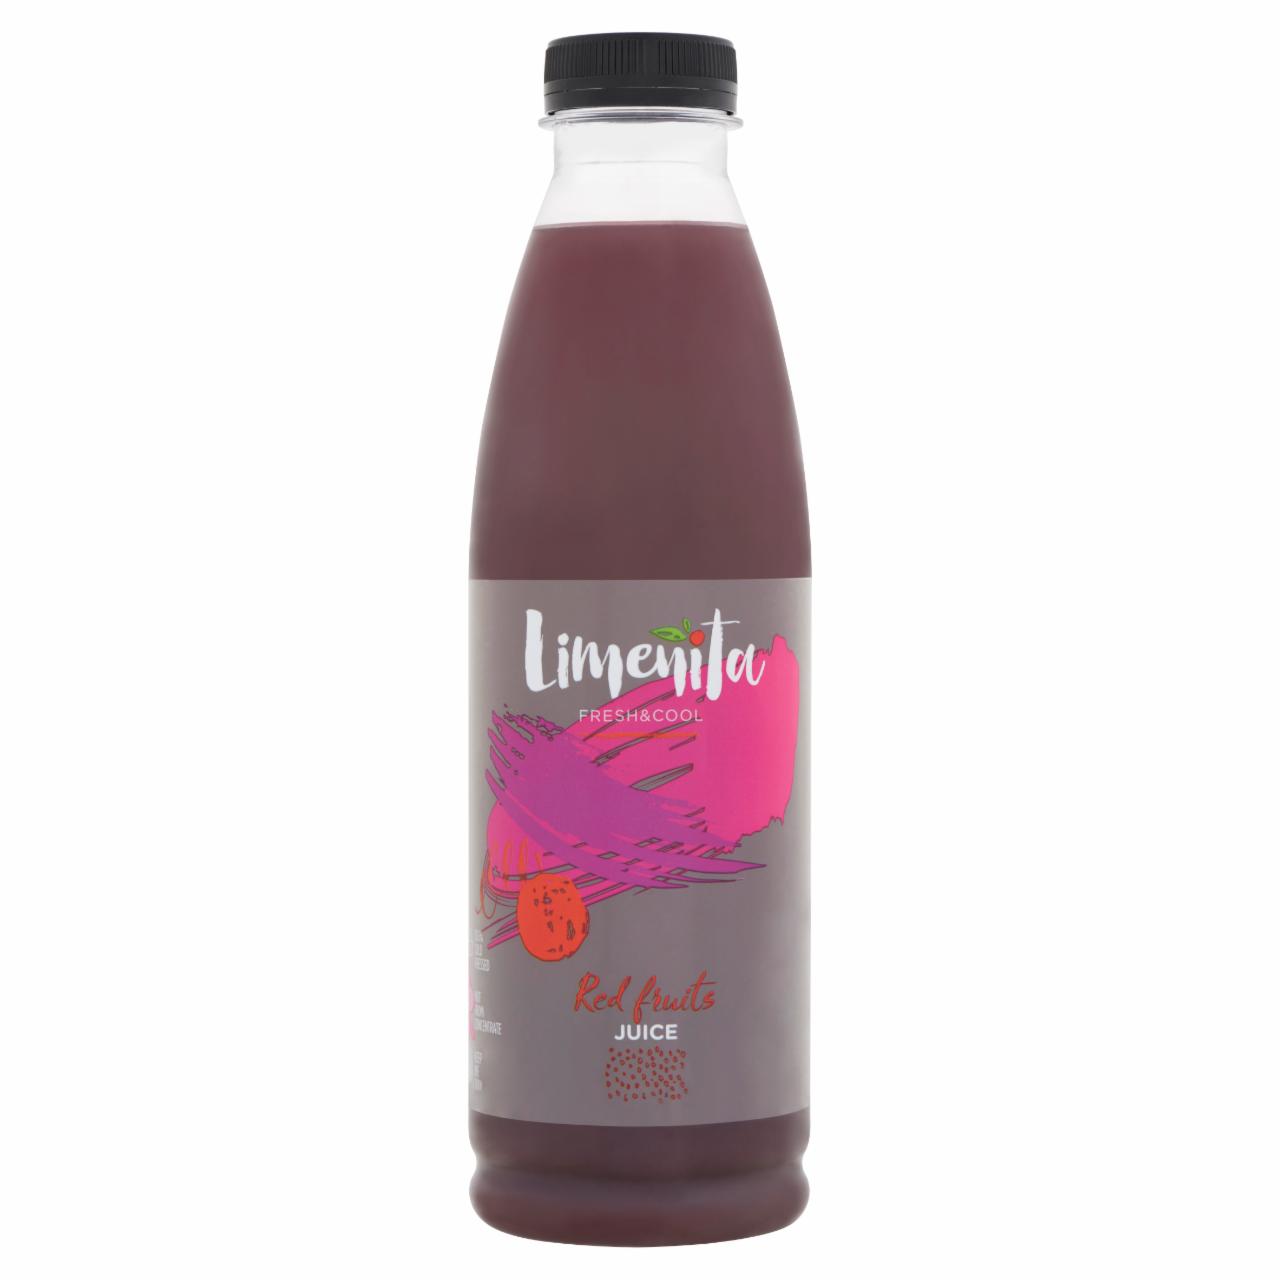 Képek - Limeñita 100% gyümölcslé 3 féle pirosgyümölcsből 750 ml